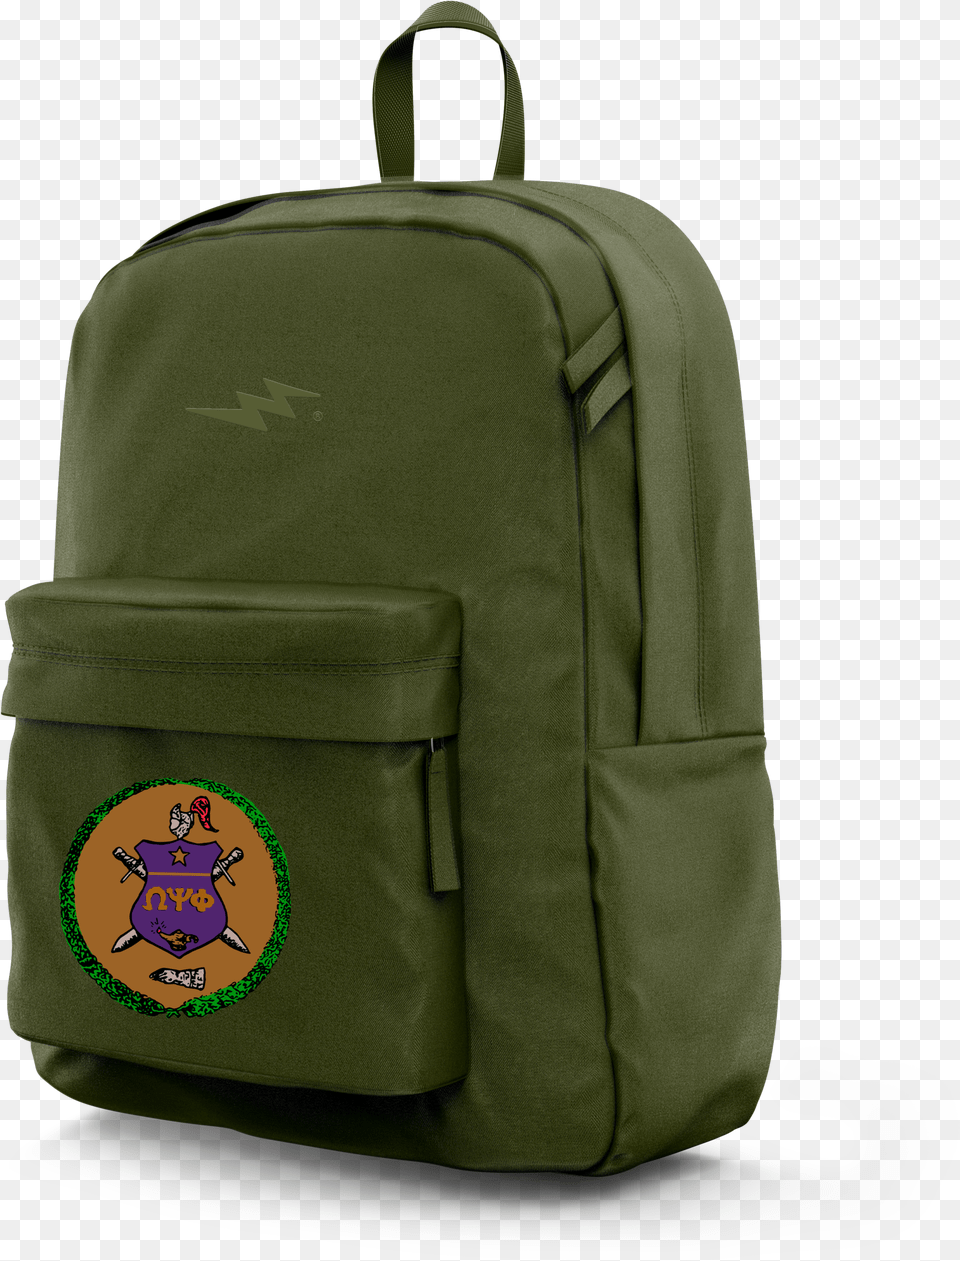 Premium Backpack Satc, Bag Free Png